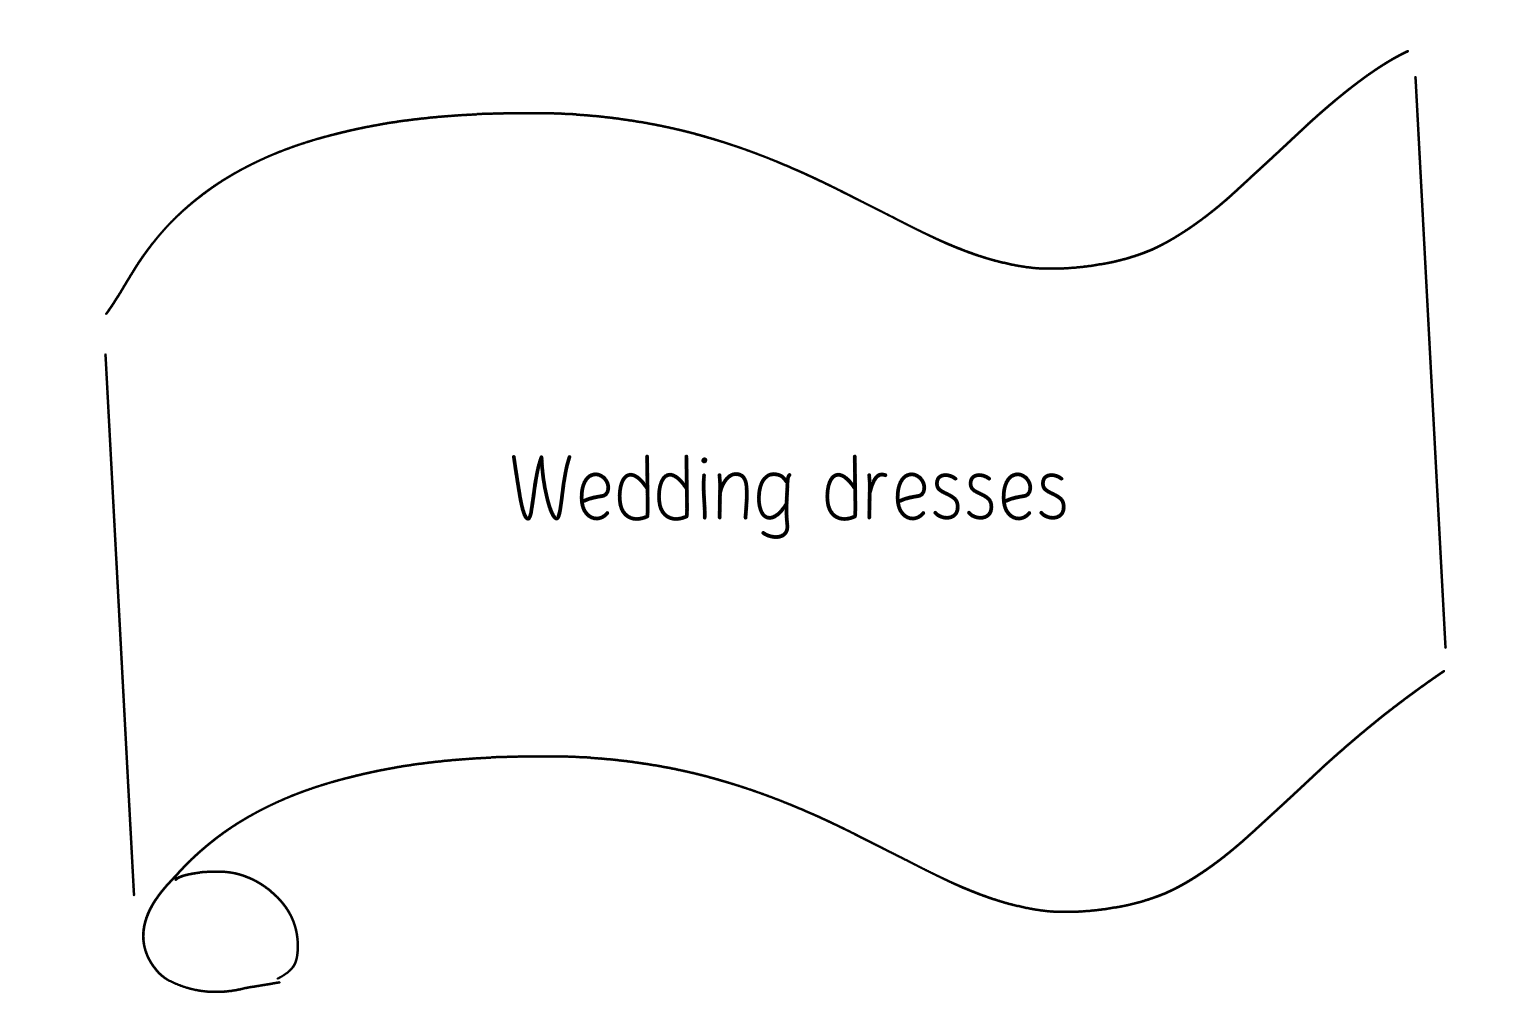 Иллюстрация свадебных платьев и магазинов для новобрачных